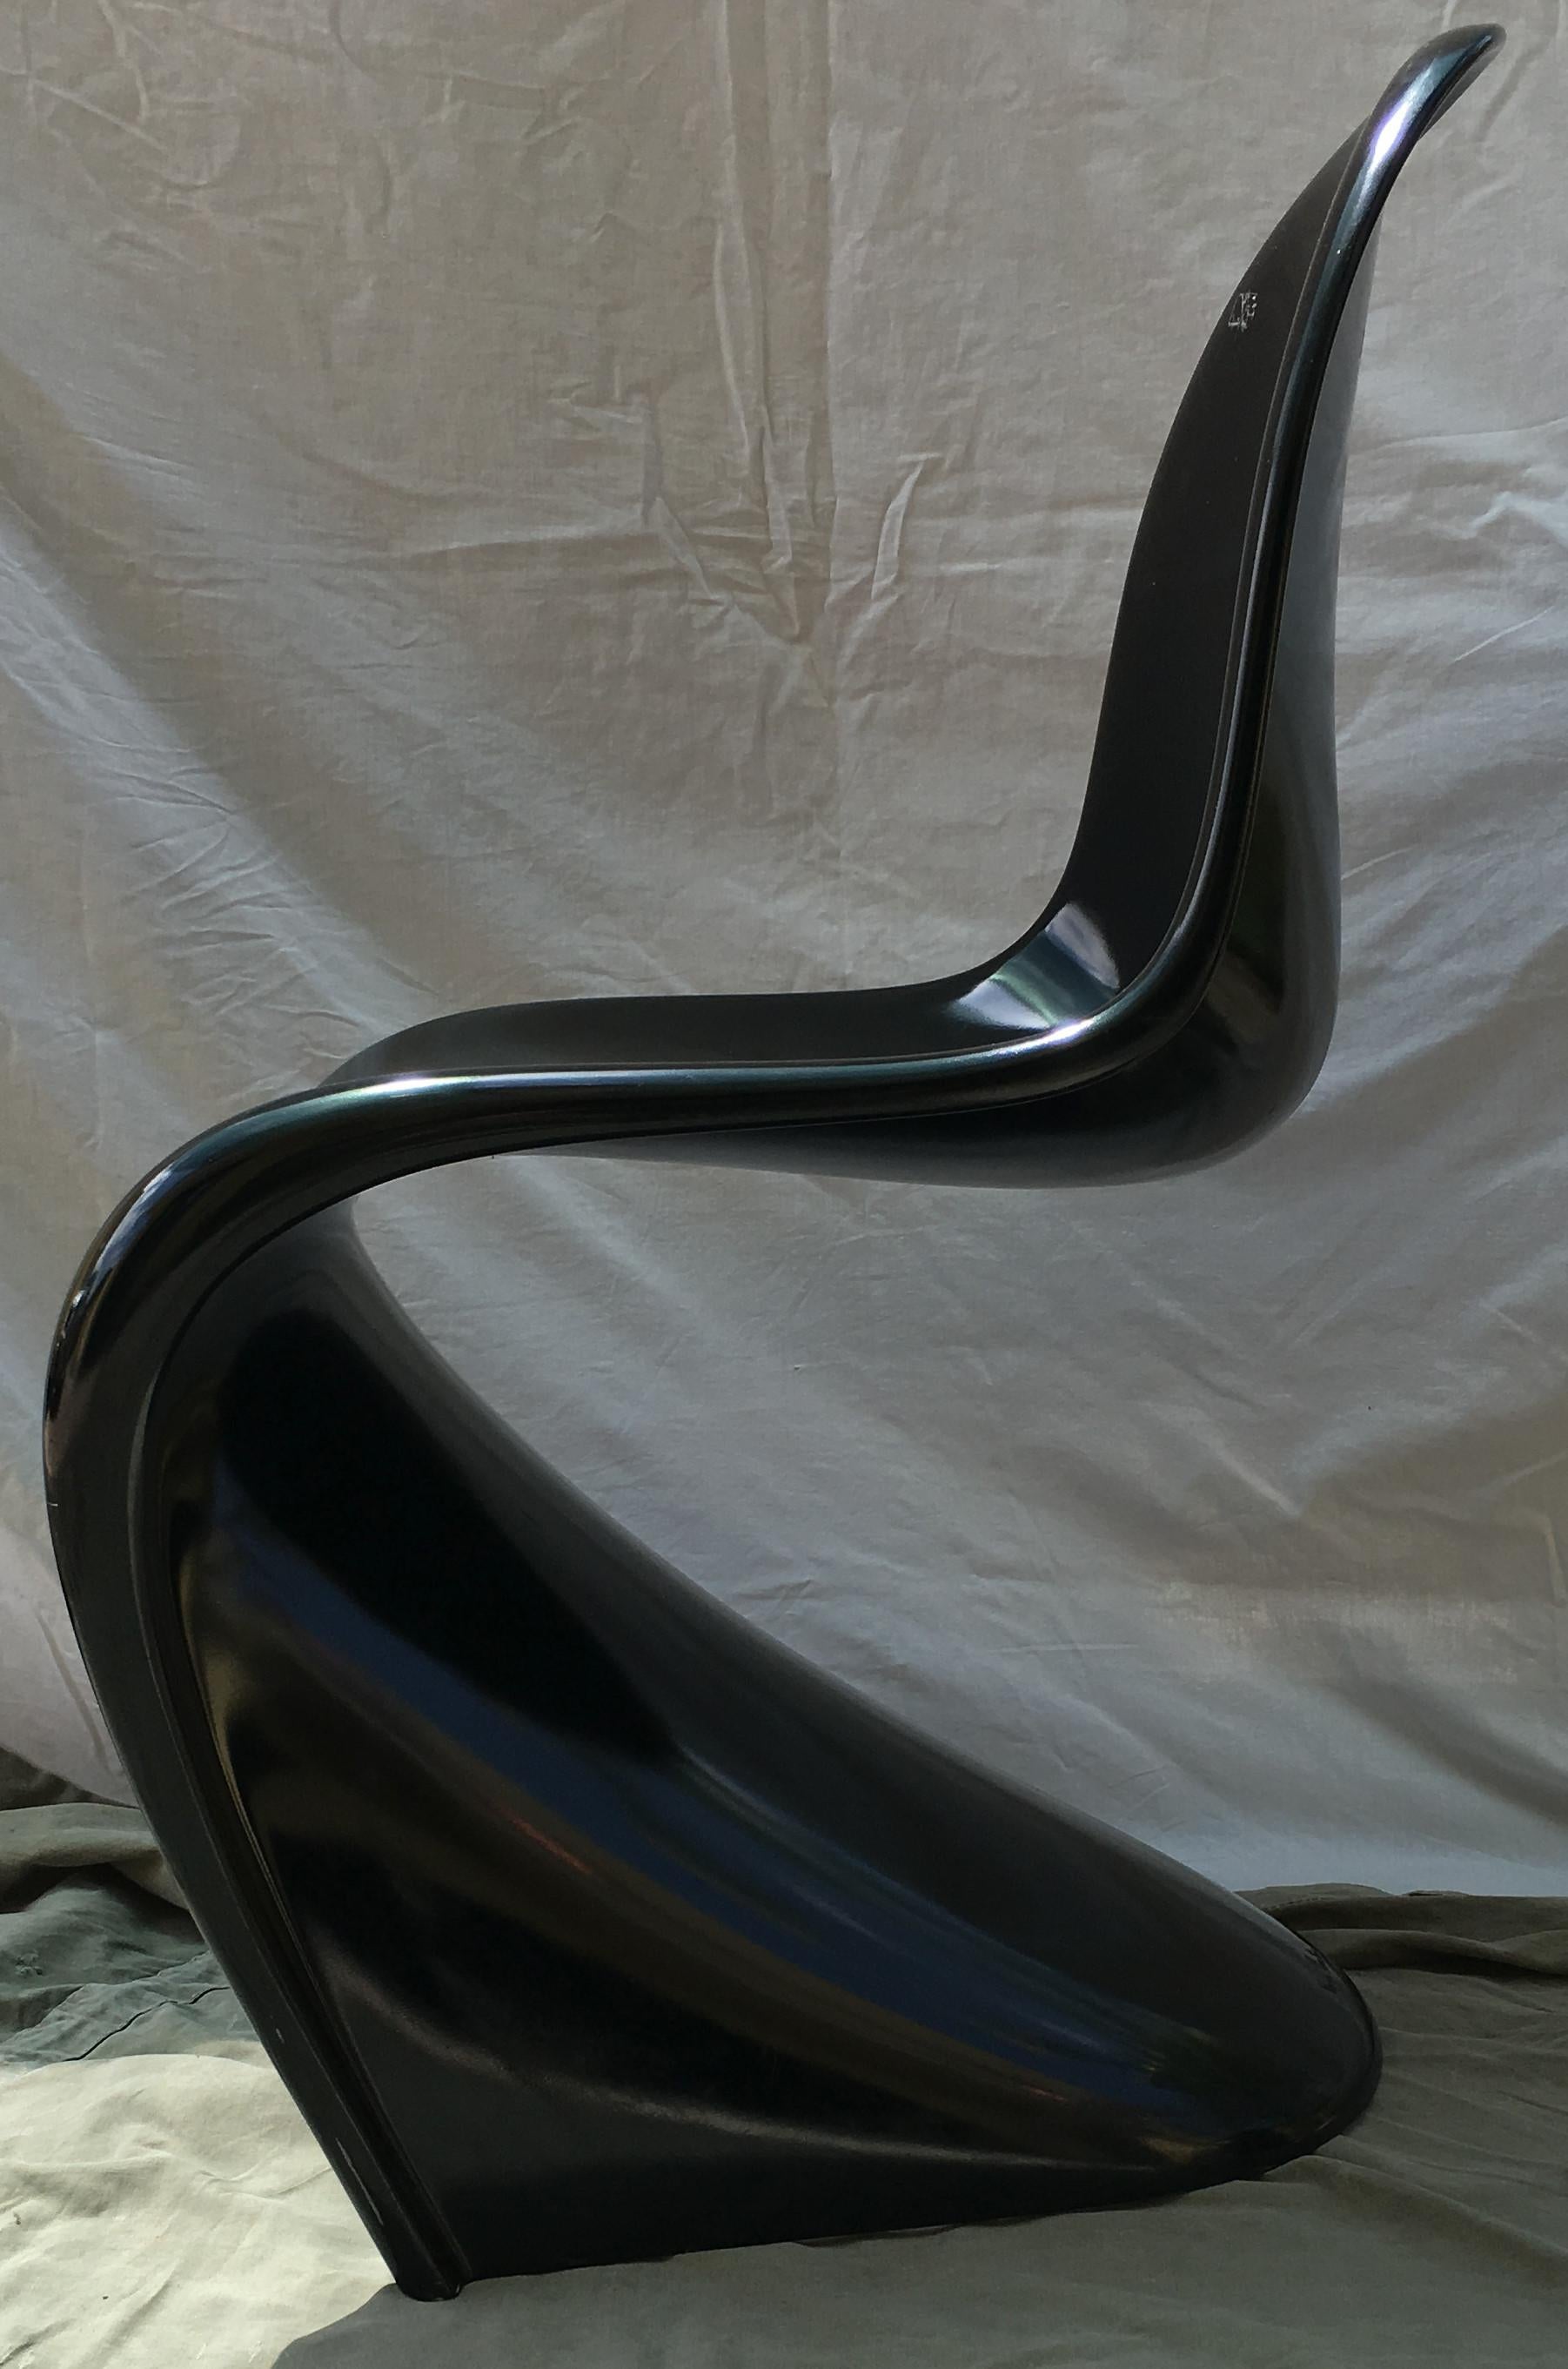 Danish Fiberglass Panton Chairs by Verner Panton for Vitra